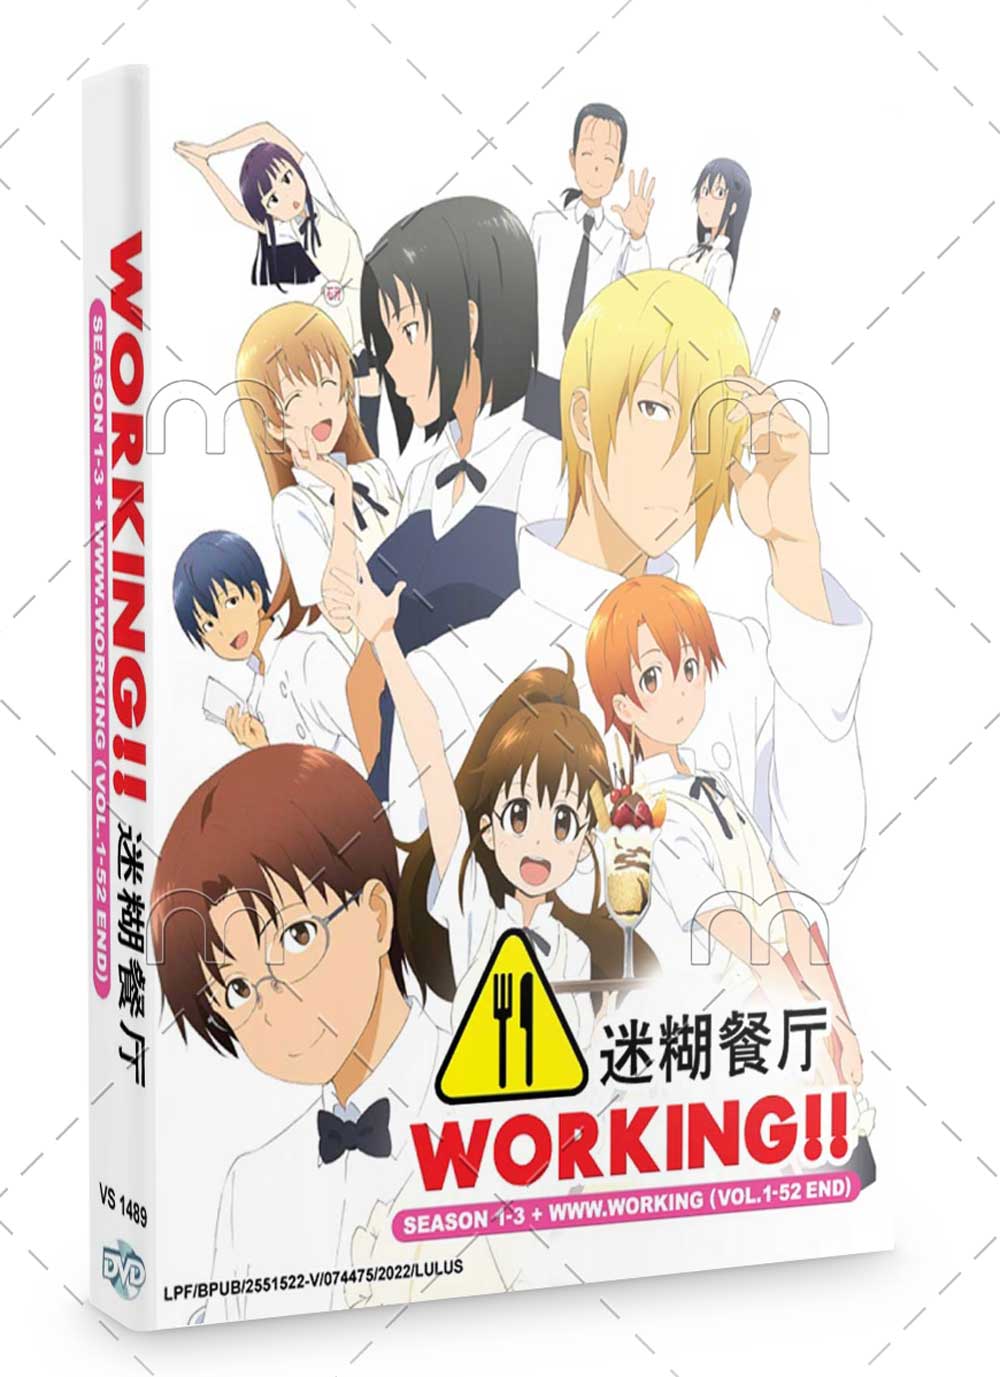 Working!!  Season 1-3 + www.working (DVD) (2010~2016) Anime